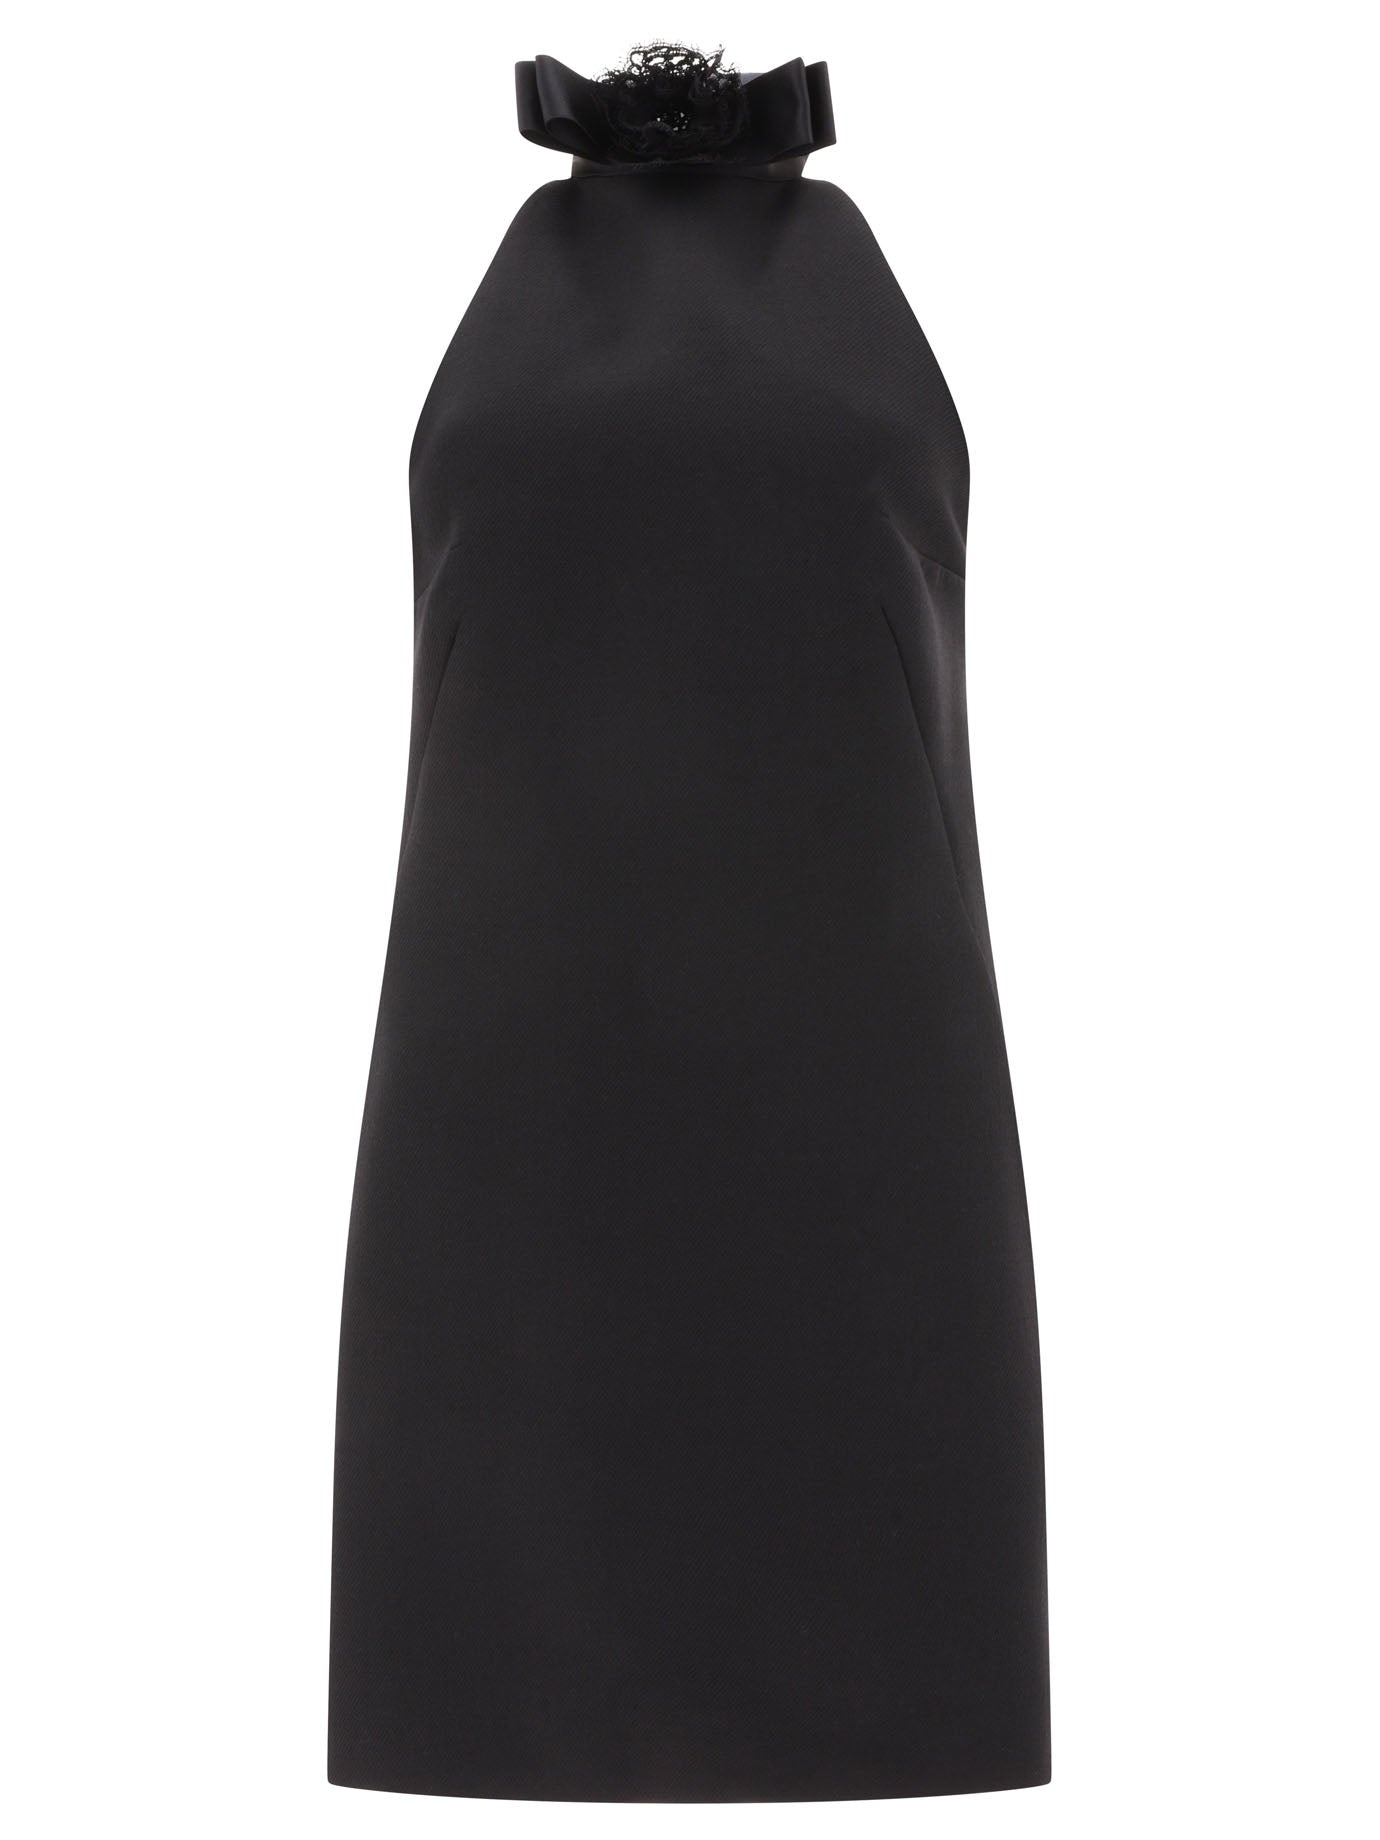 Dolce & Gabbana Short Woolen Dress With Rear Neckline - 1